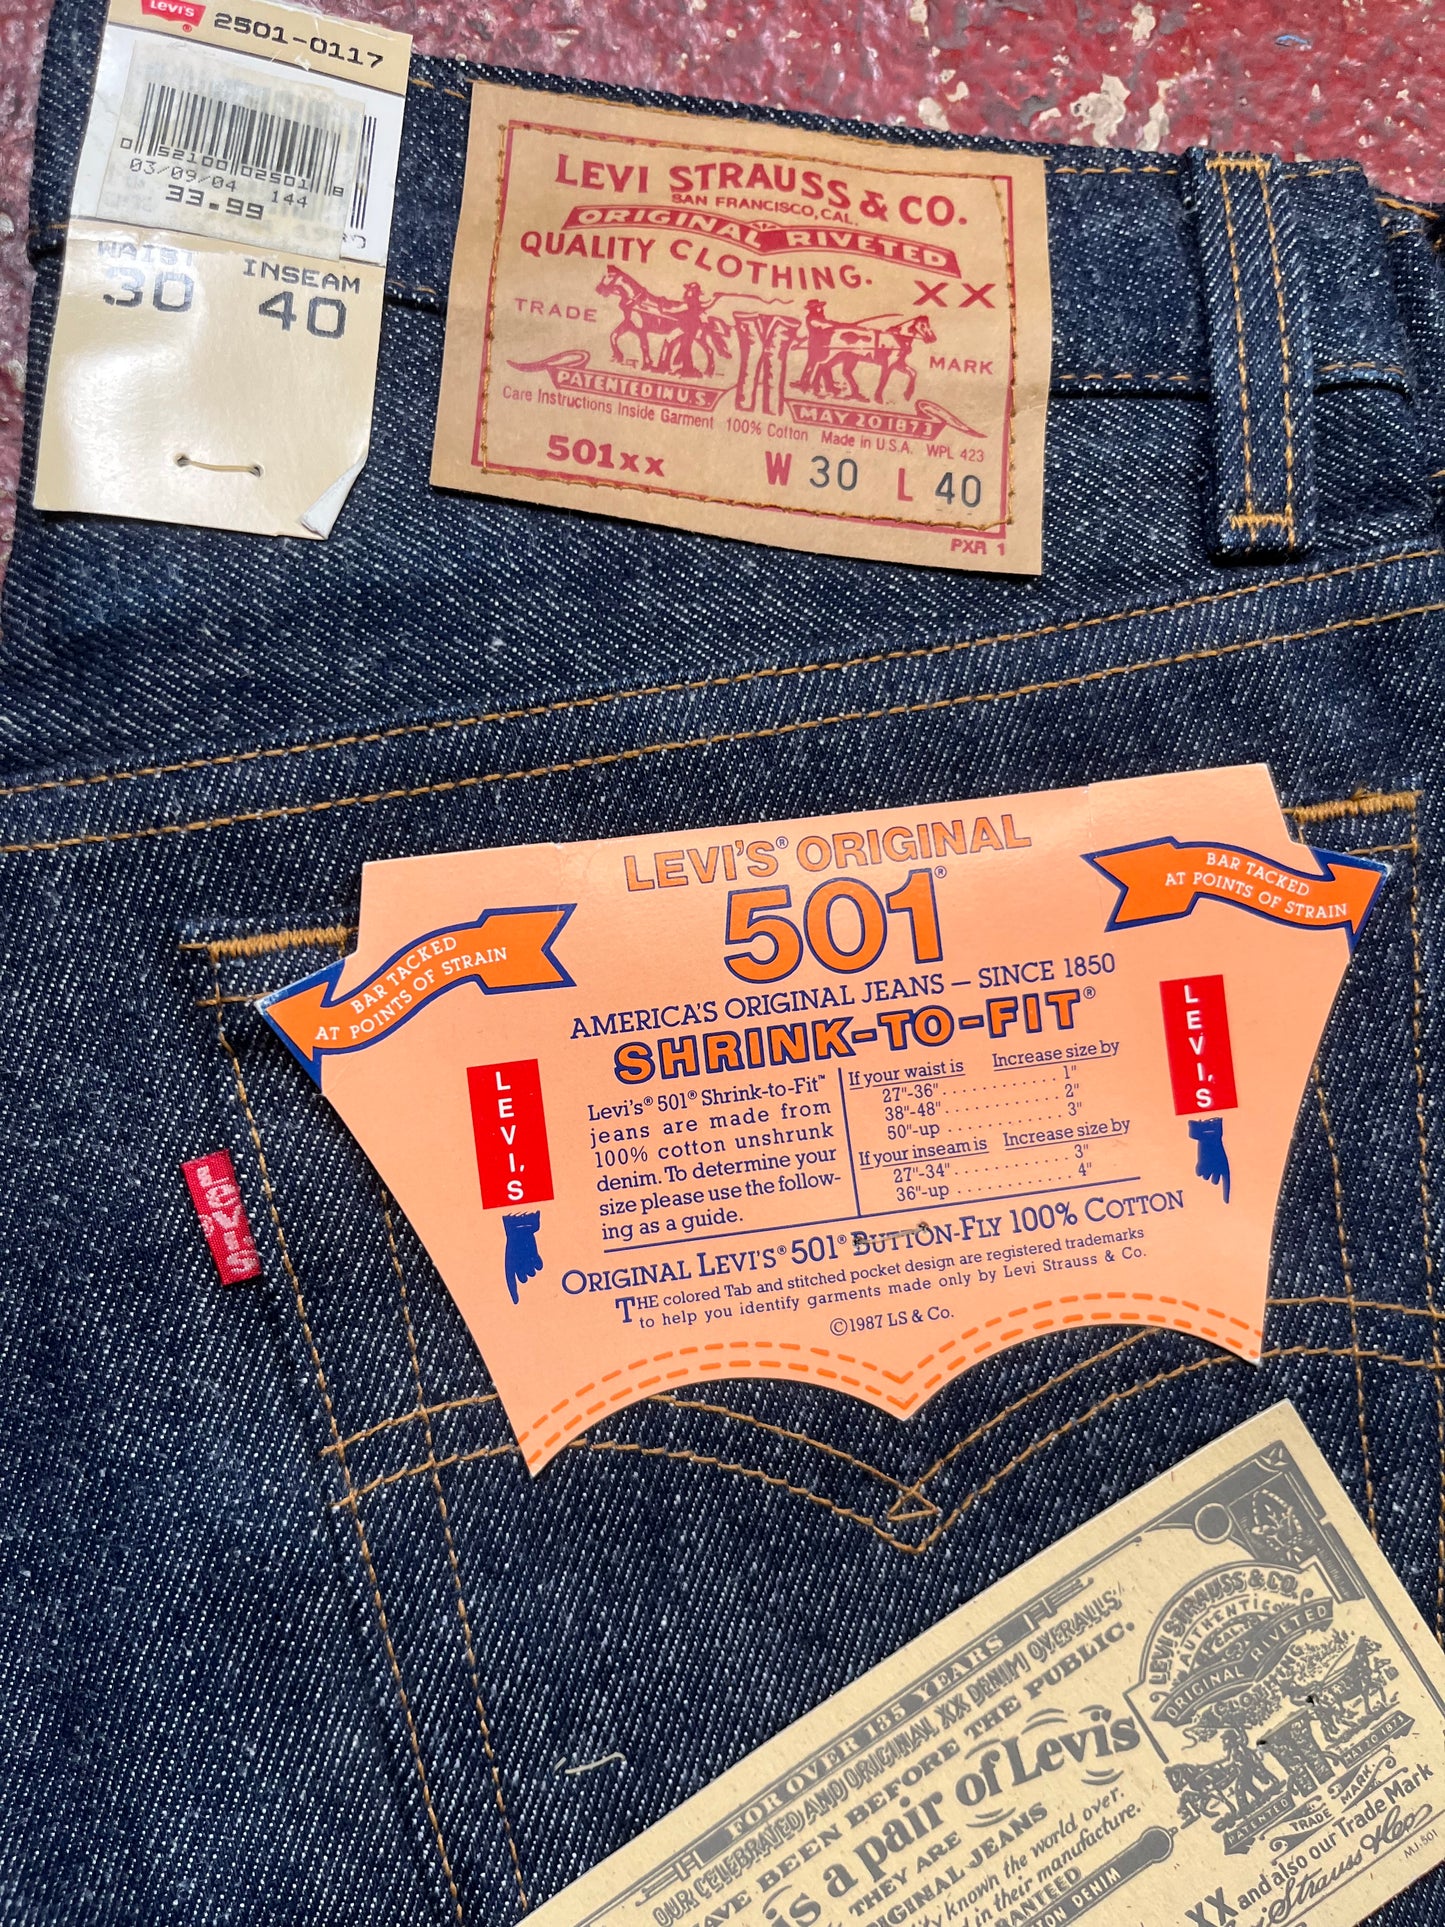 1987 DS Levis 501s Jeans